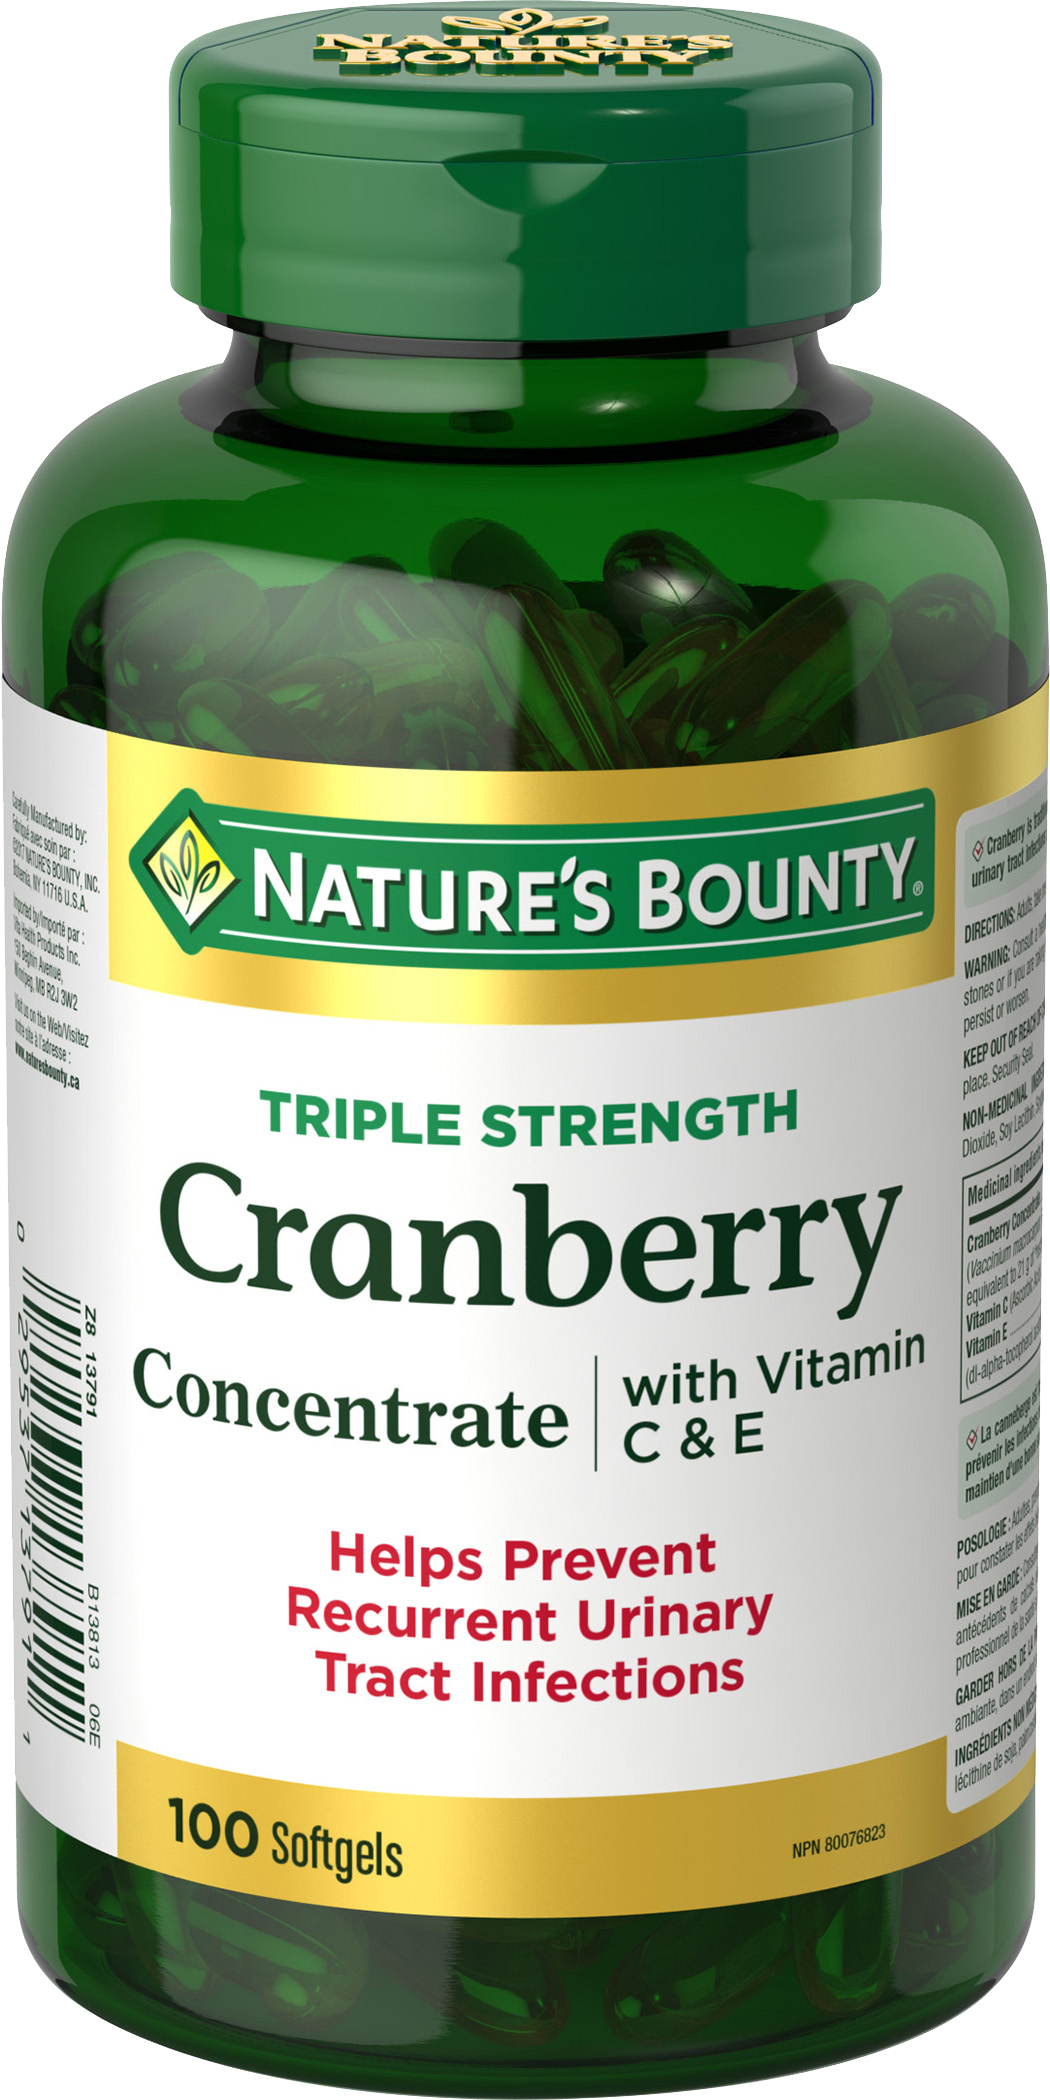 Cranberry with Vitamin C + E